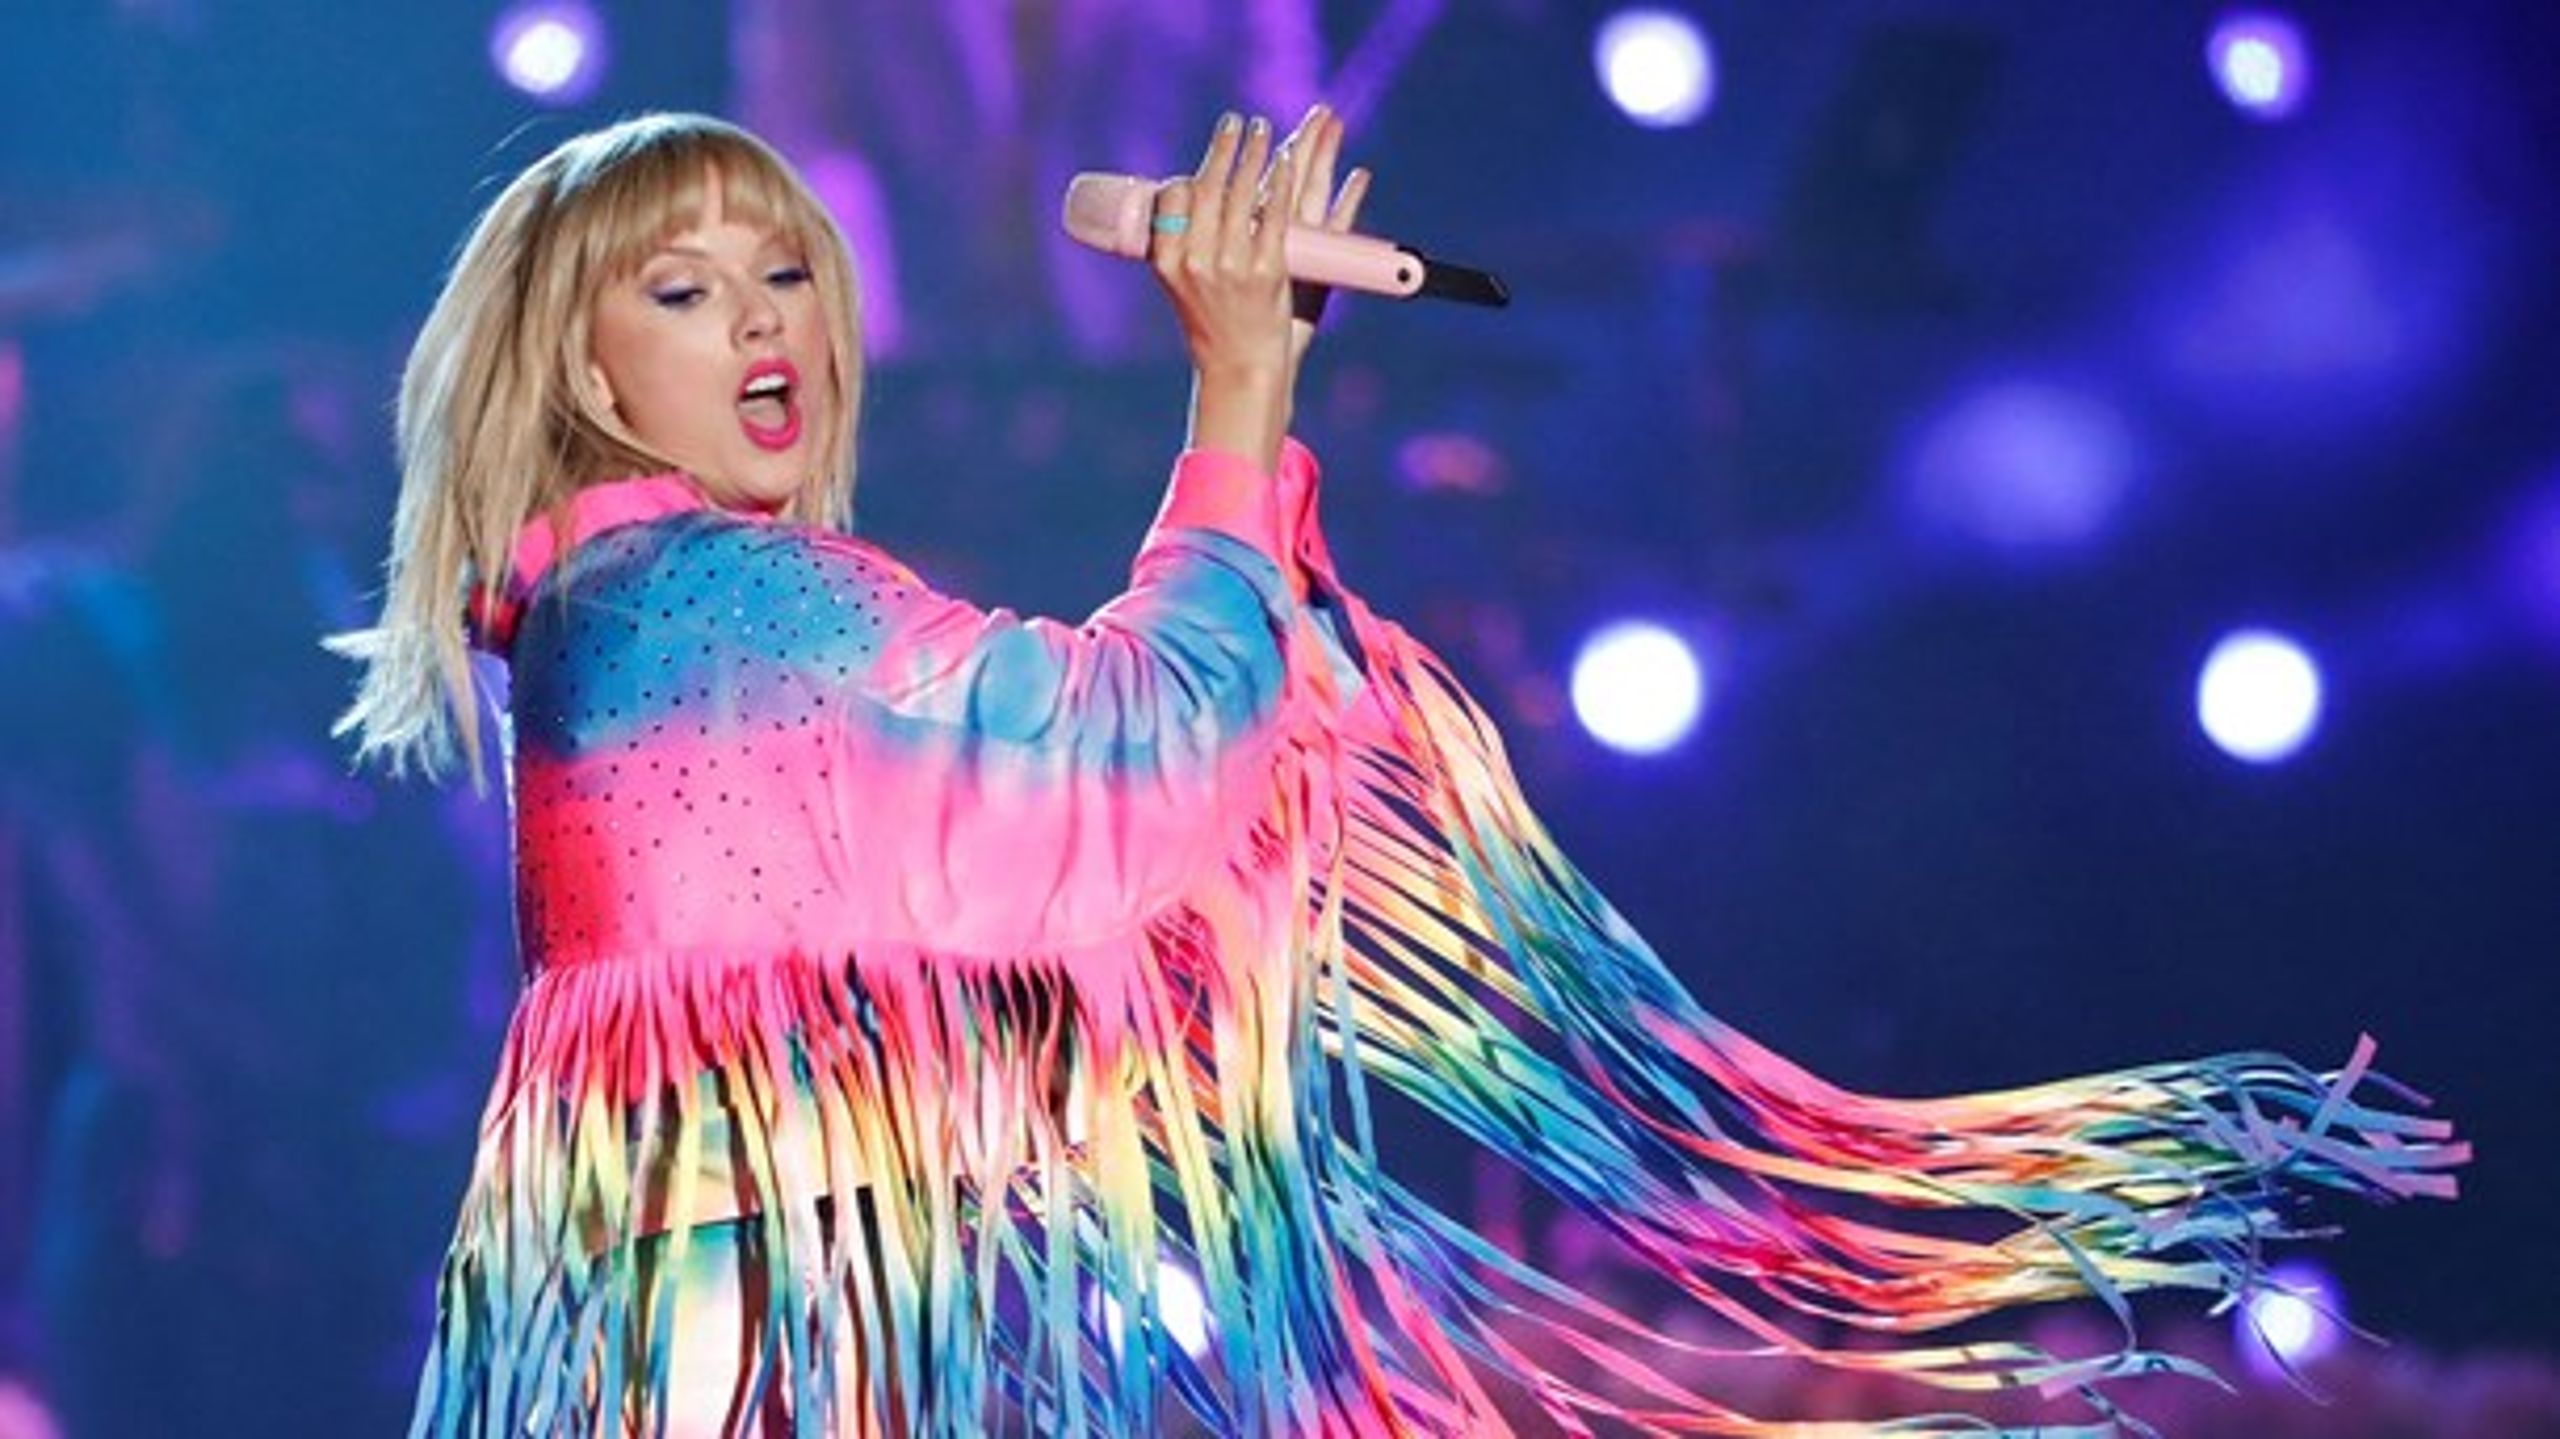 Popstjernen Taylor Swift, der spiller til Roskilde Festival 2020, vil blive en naturlig del af kulturdækningen, hvis Loud får sendetilladelse på DAB. Kanalen afviser, at dækningen bliver reklamesøjle for partnerkredsen.<br>